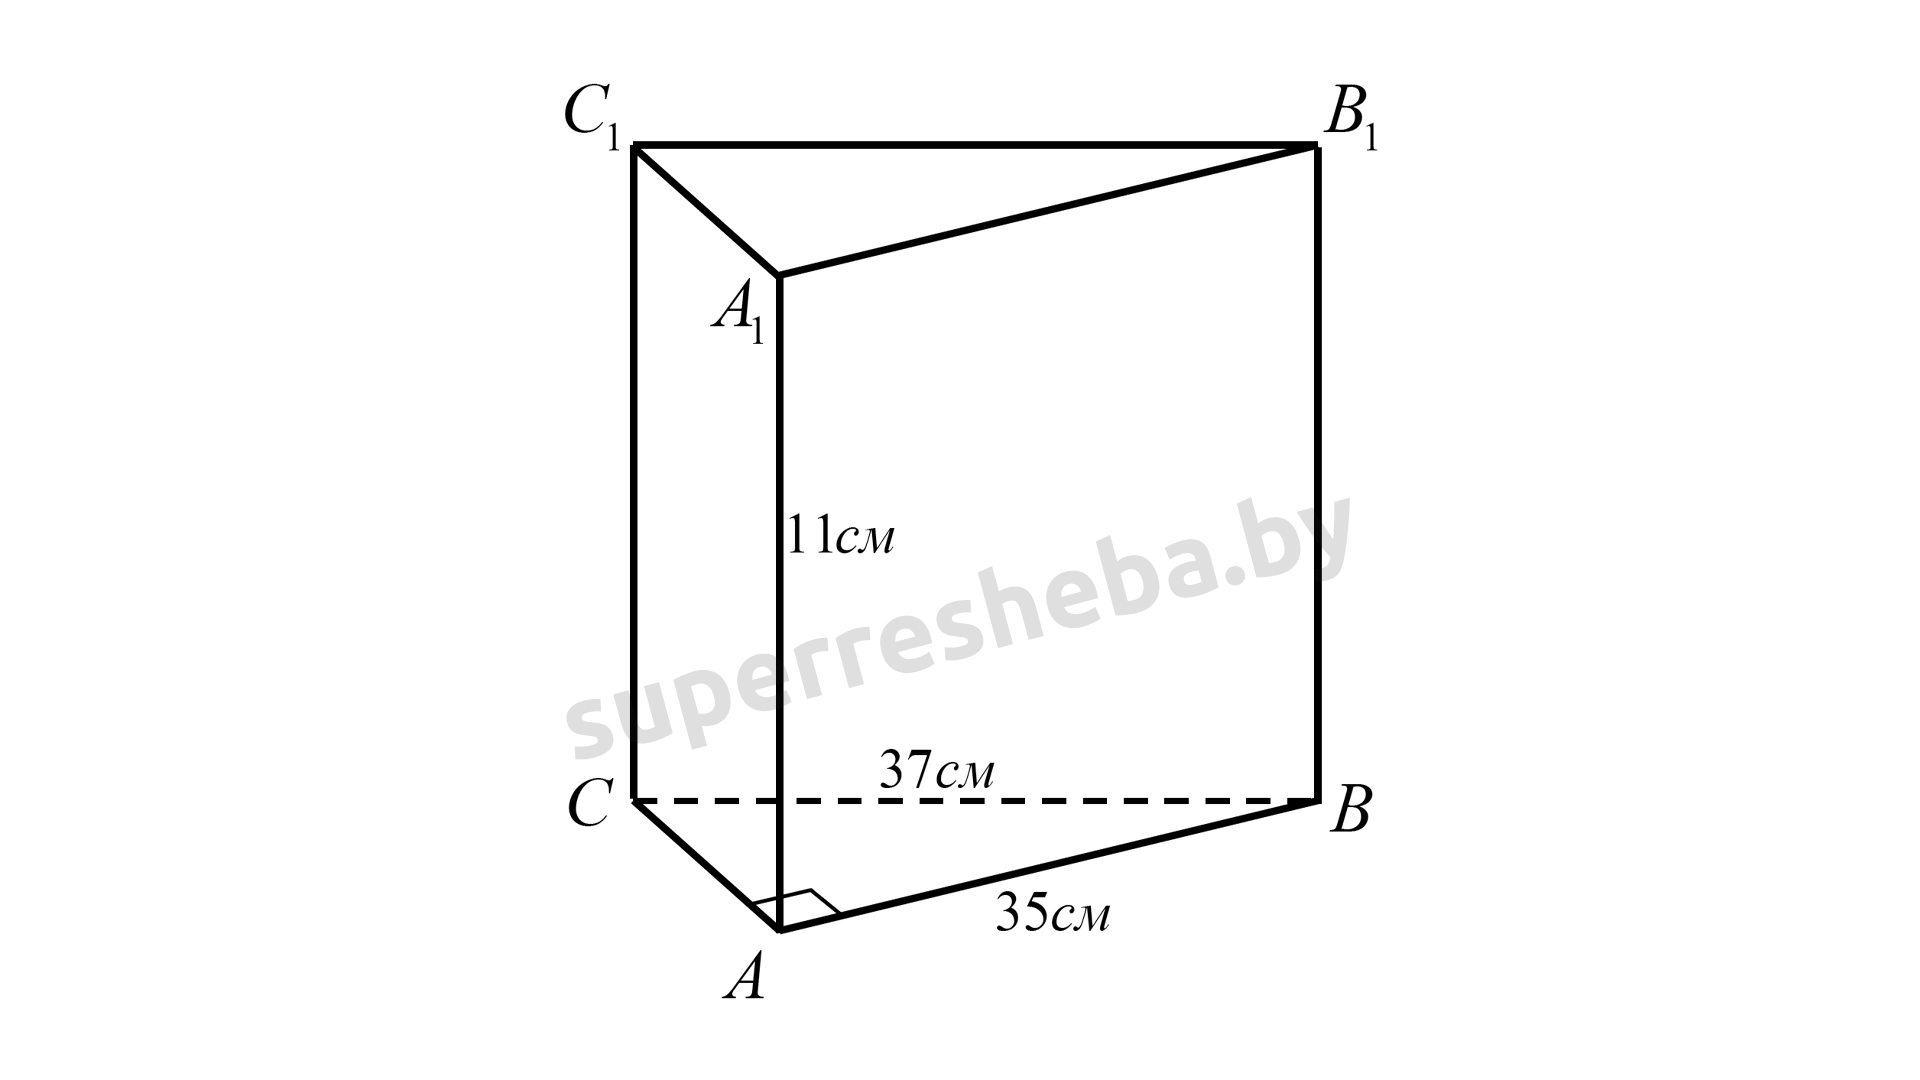 Объем треугольной призмы abca1b1c1 равен 15